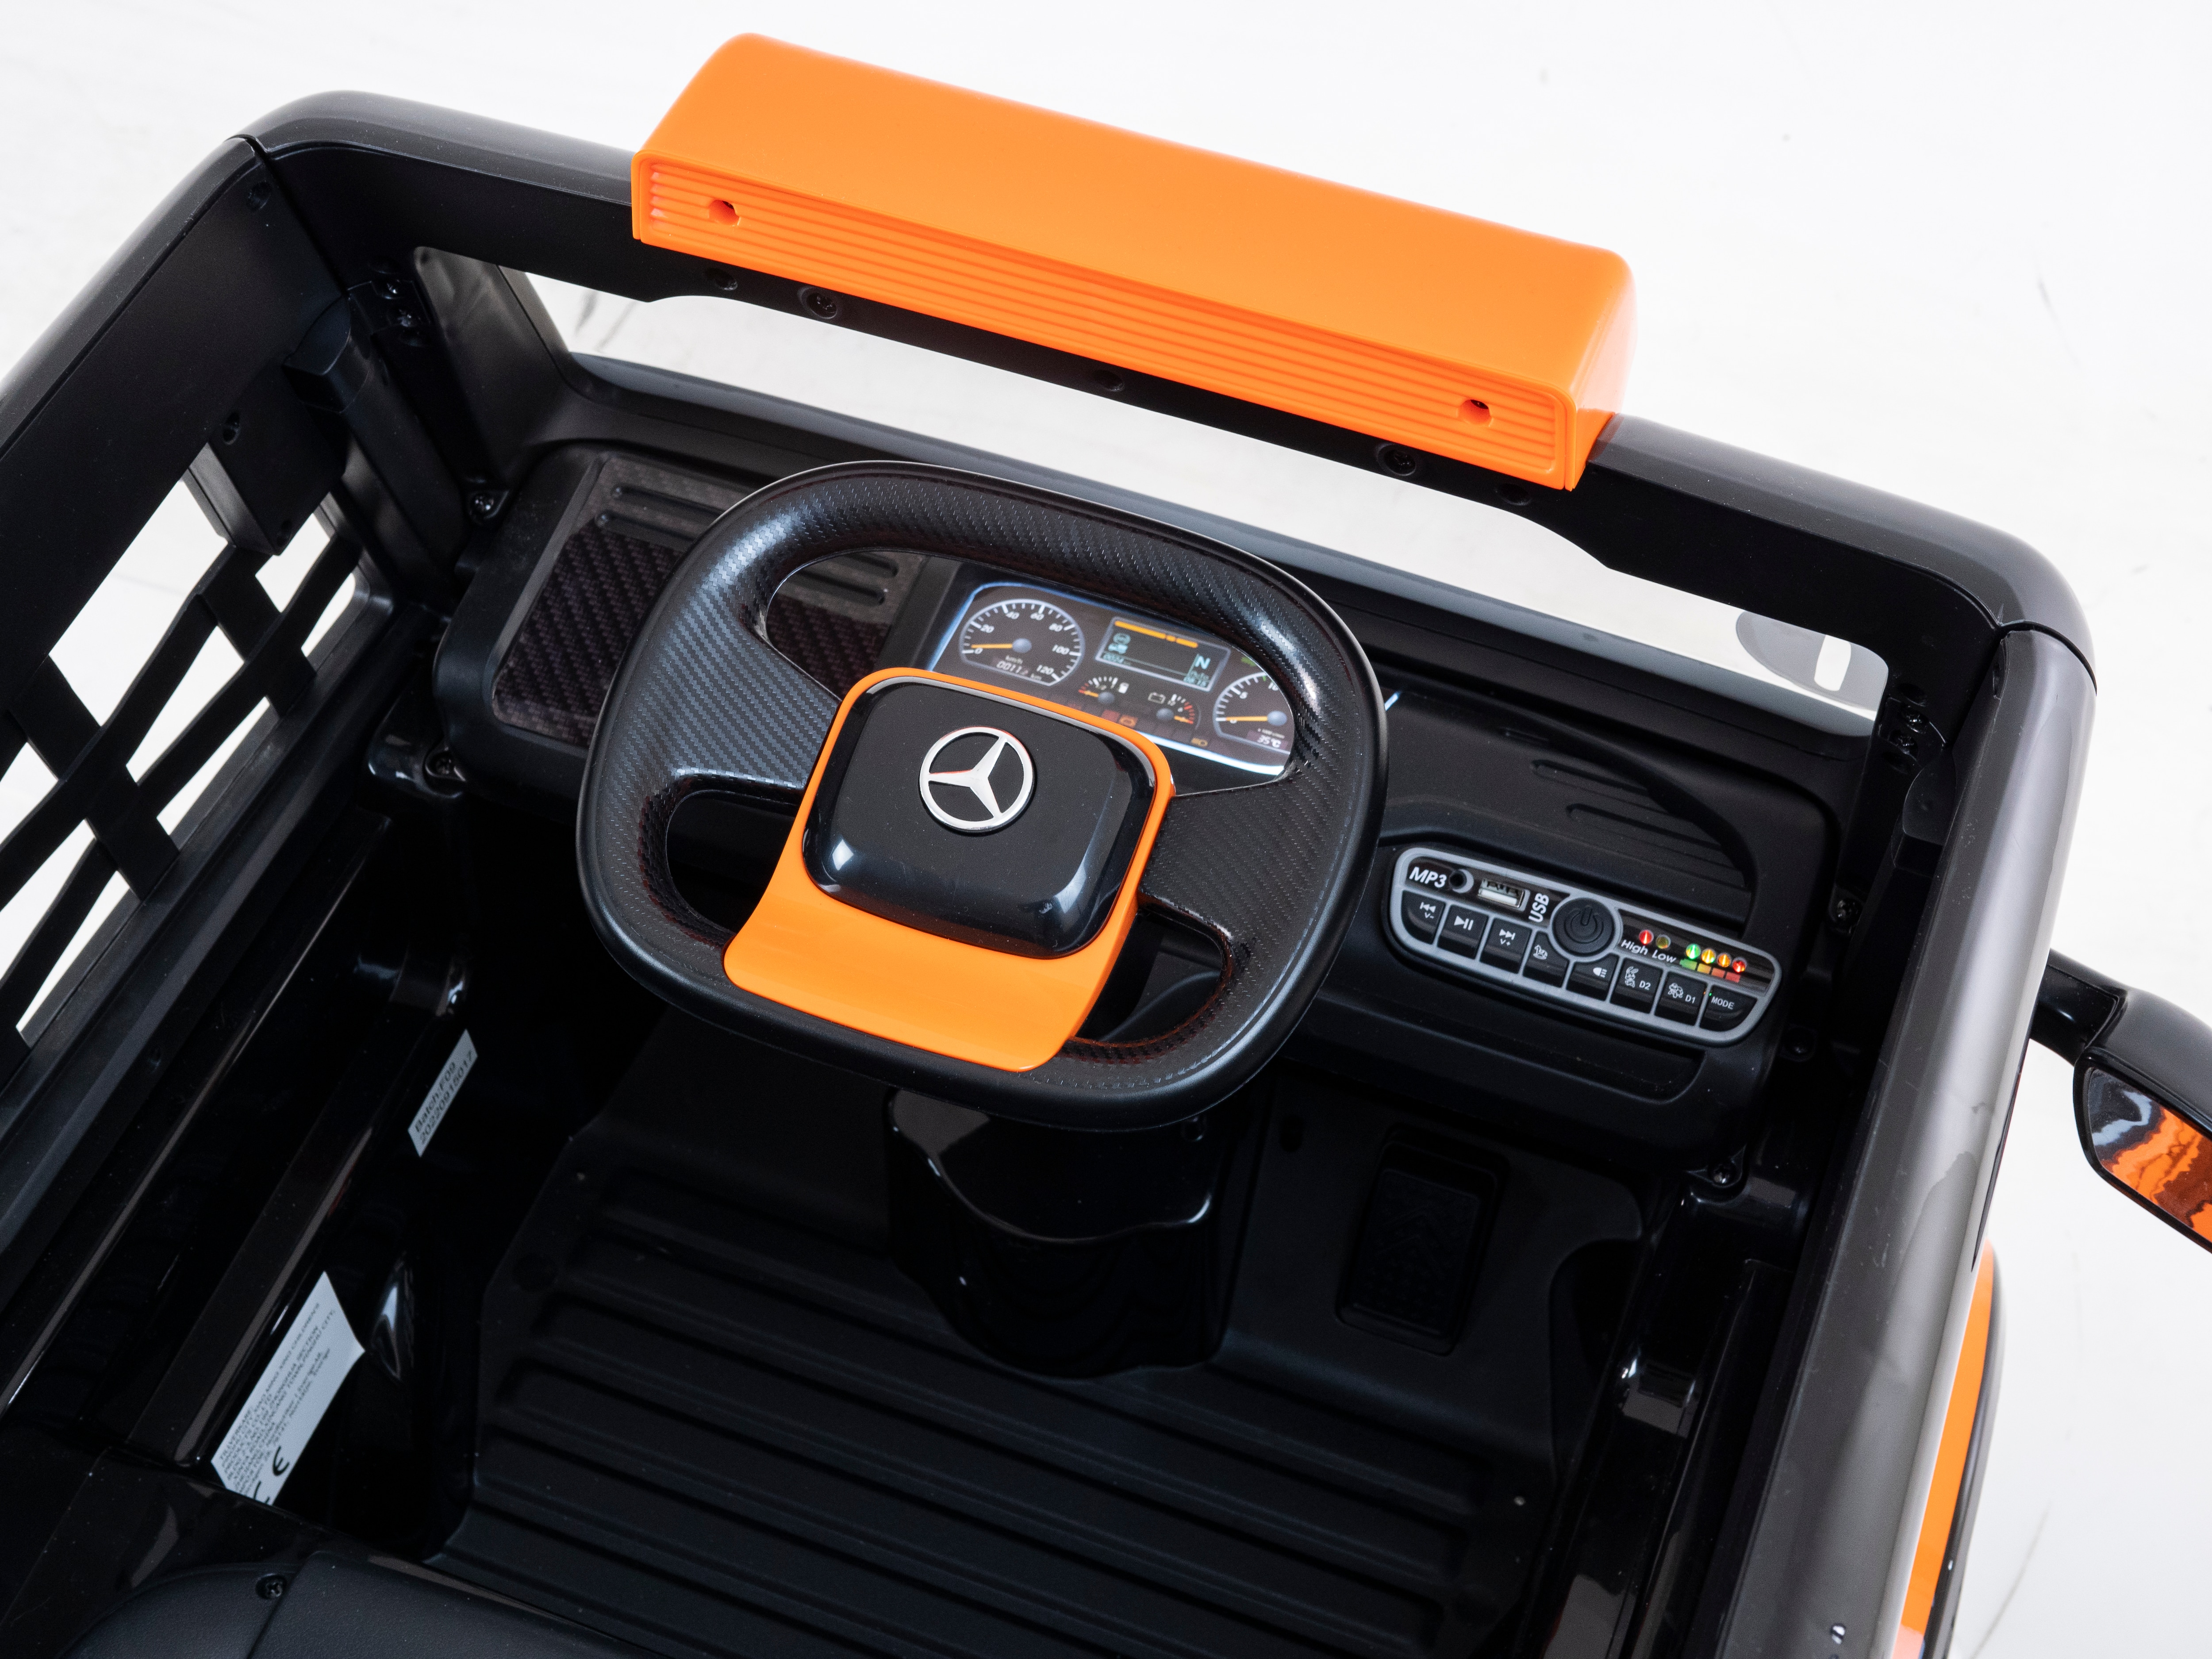 Sähköauto Mercedes Axor - Orange